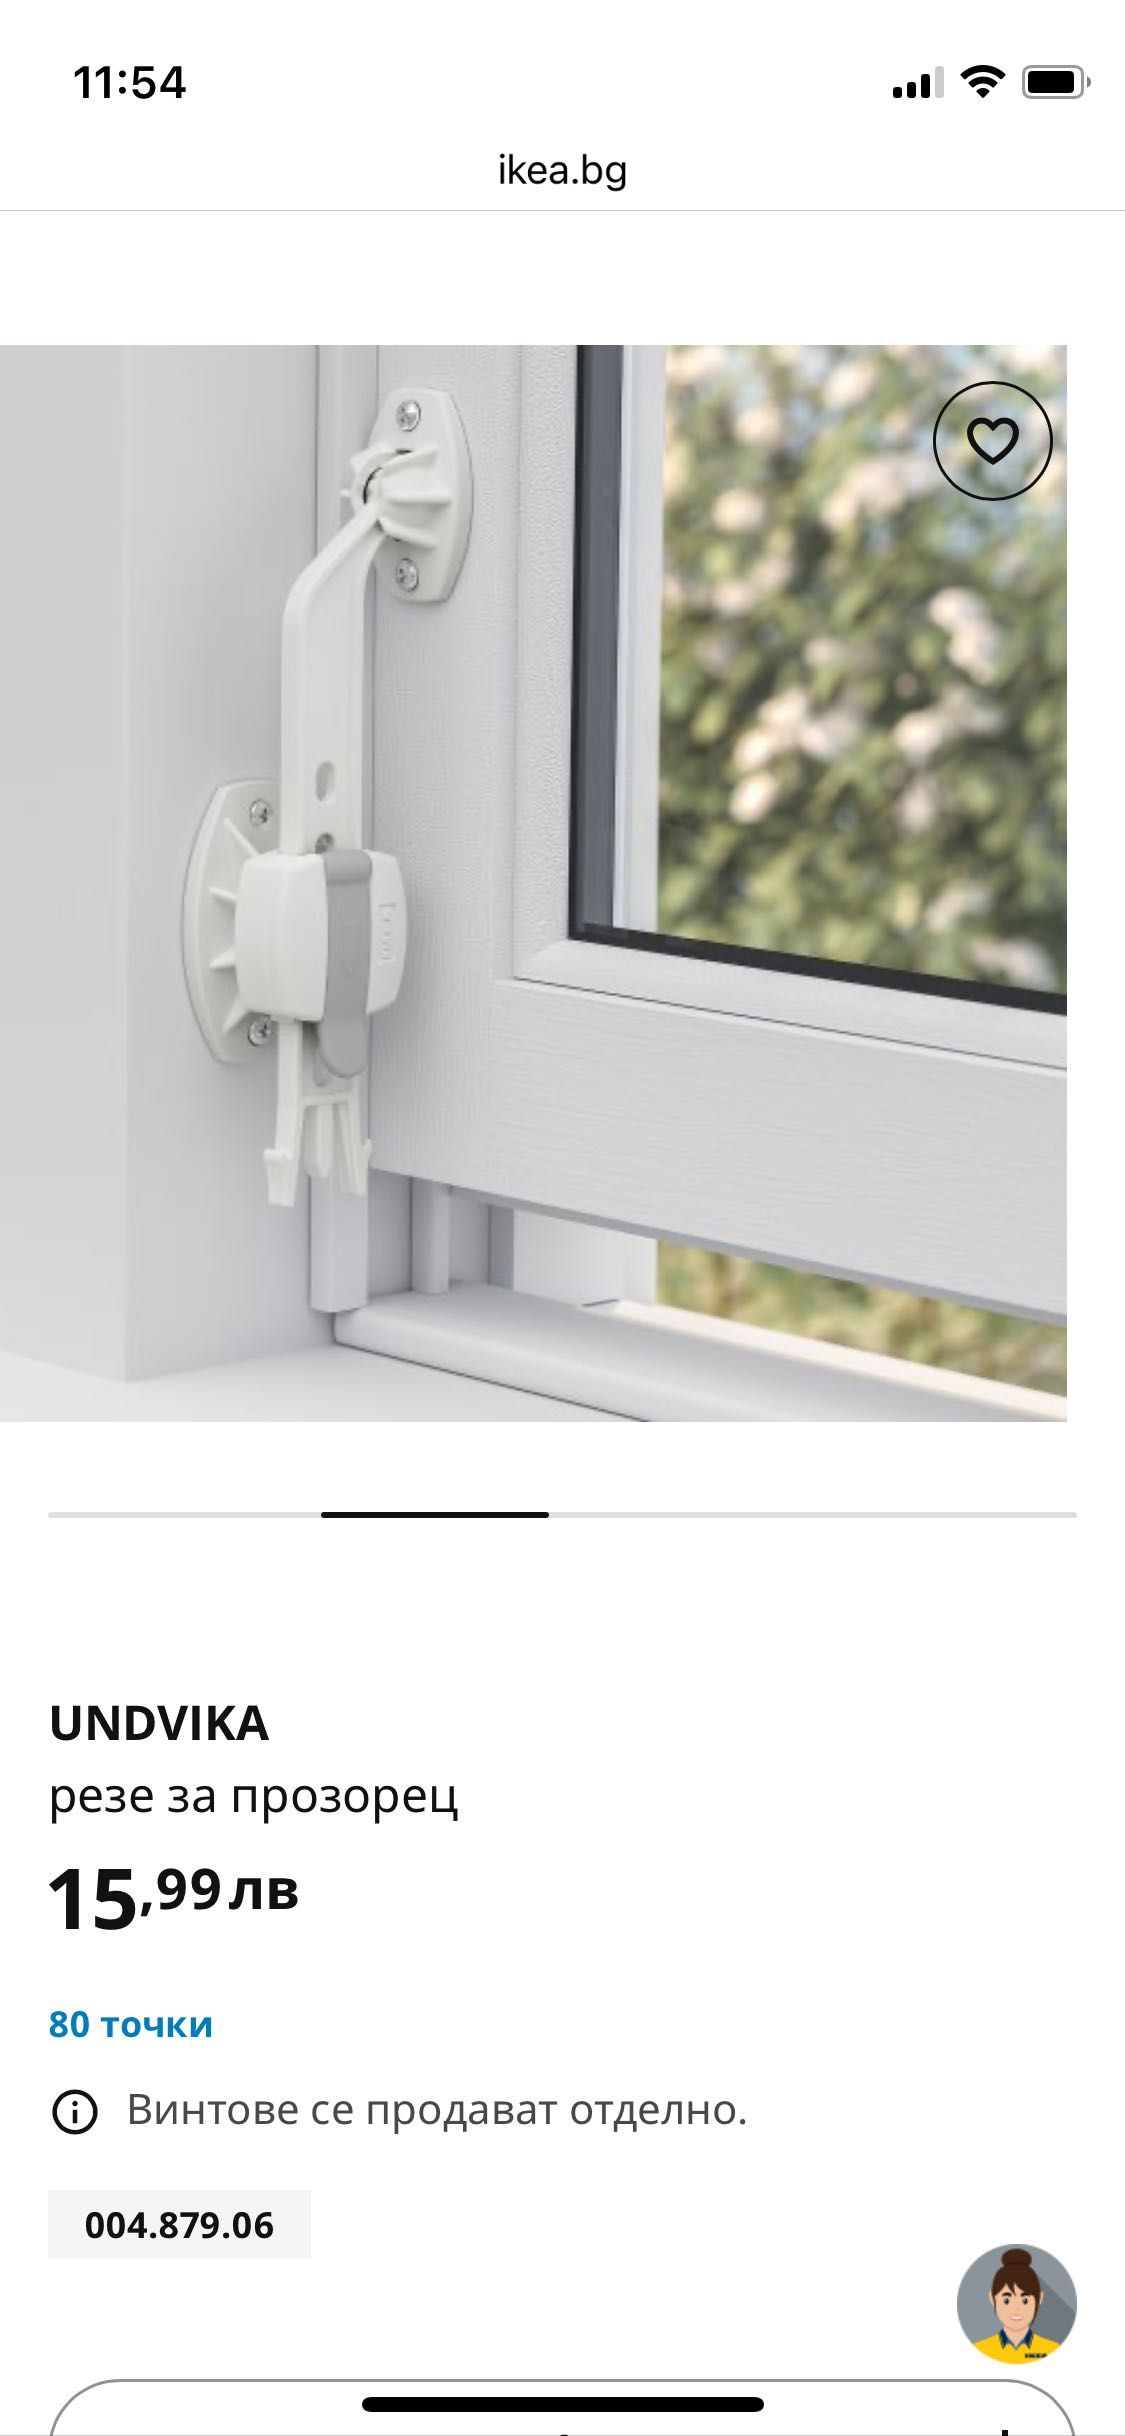 IKEA UNDVIKA резе за прозорец - безопасност на детето